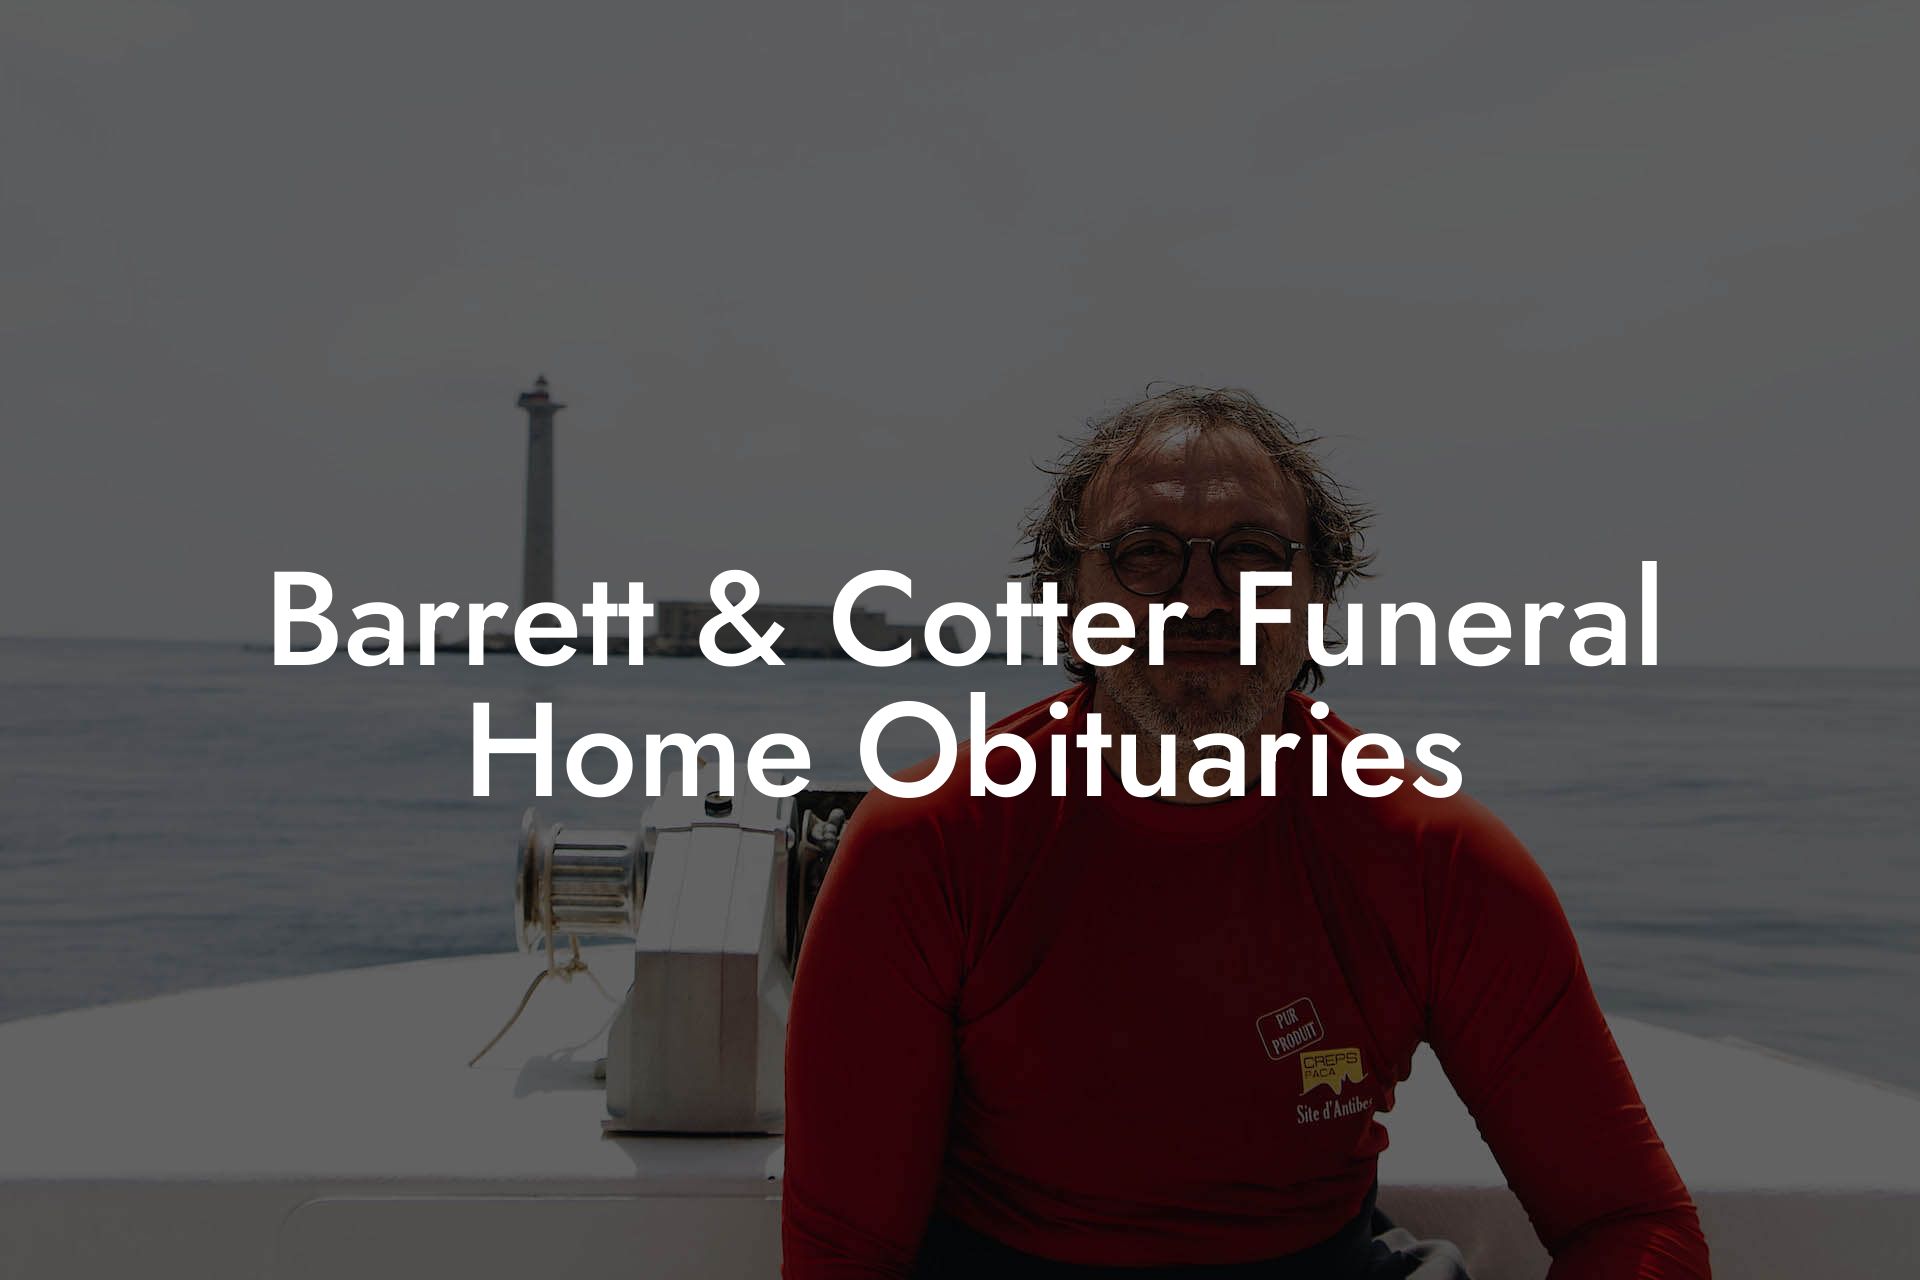 Barrett & Cotter Funeral Home Obituaries